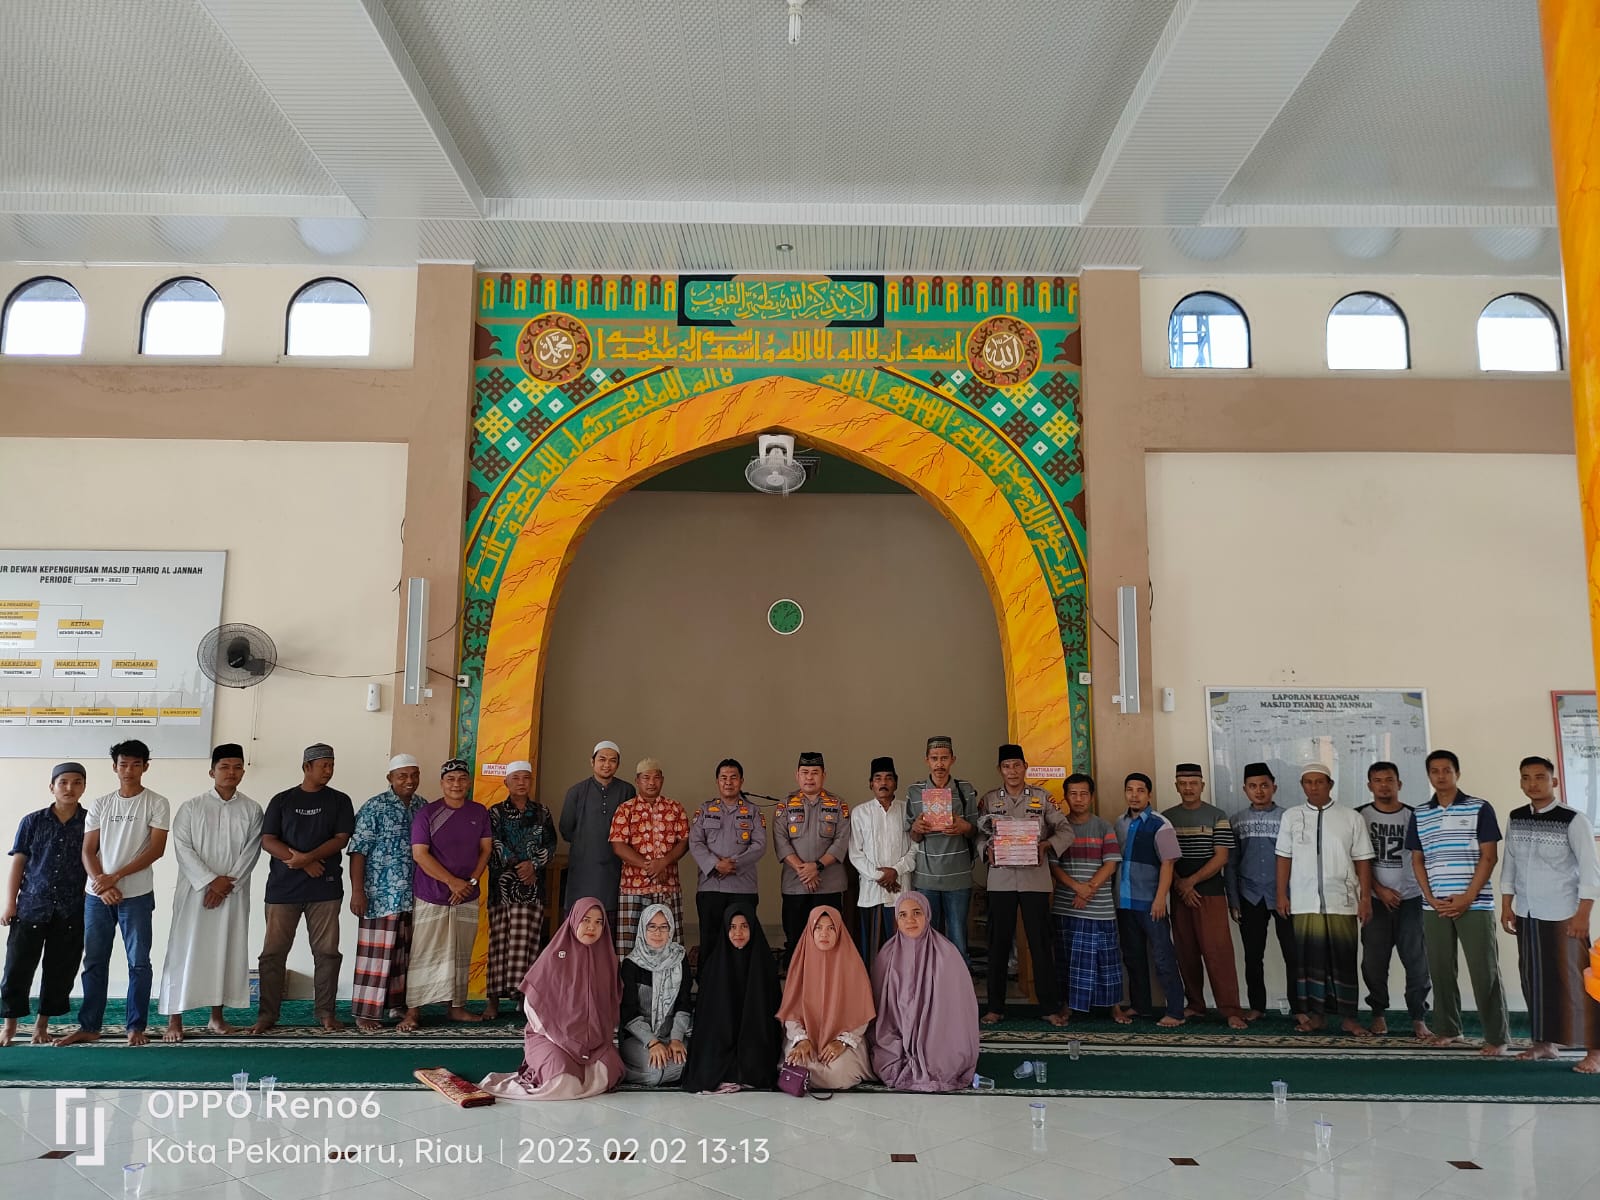 Dirbinmas Polda Riau Serahkan Sarana Kontak Berupa Kitab Suci, Kepada Masjid Tariq Al Jannah Perumahan Damai Asri Tuah Madani